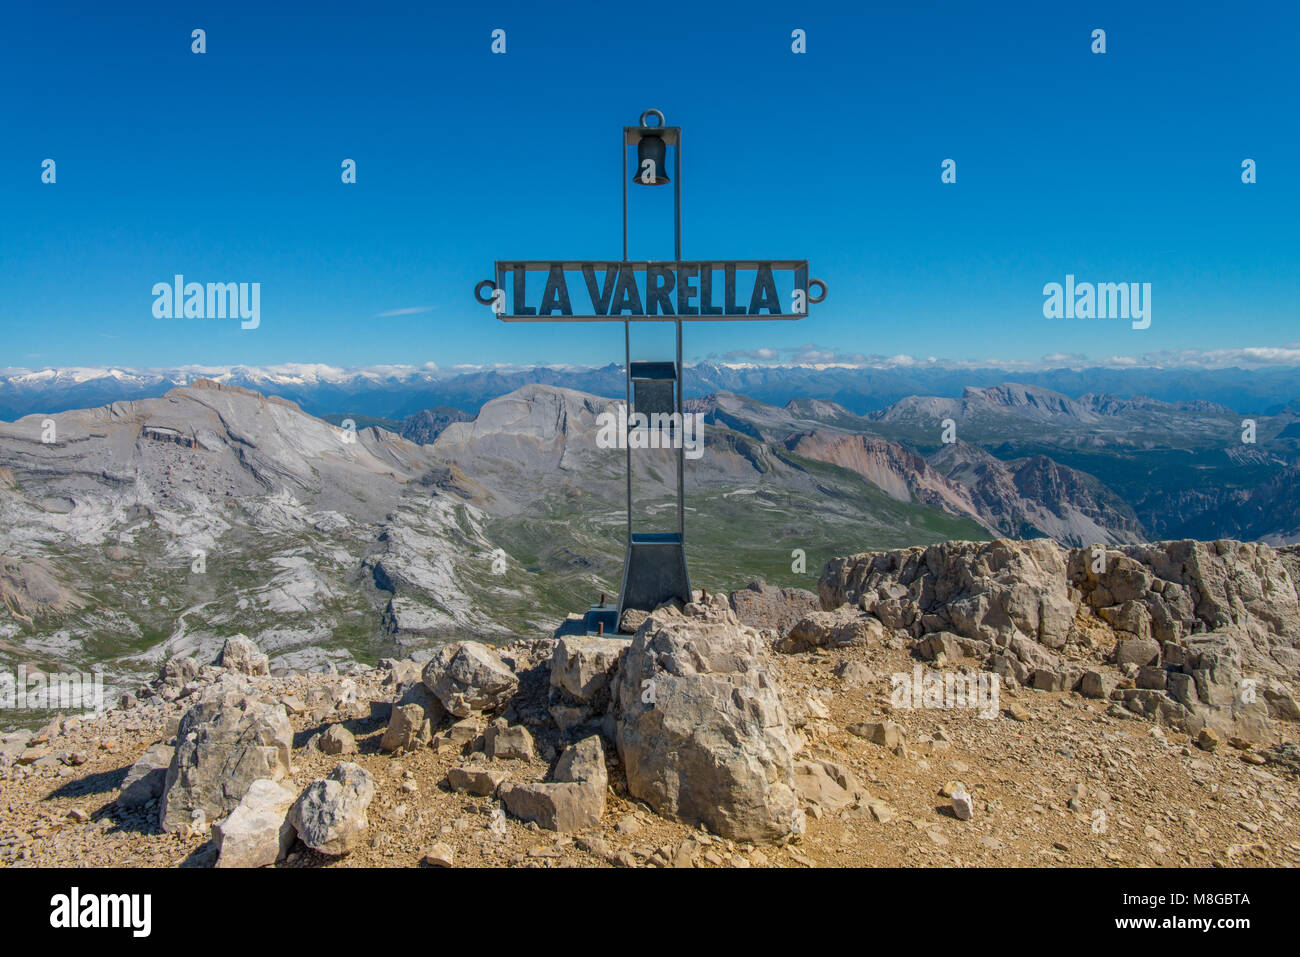 La croce di vetta del La Varella, con sullo sfondo le Alpi e la valle di Fanes park . Montagne dalle vette innevate in estate in montagna. Foto Stock